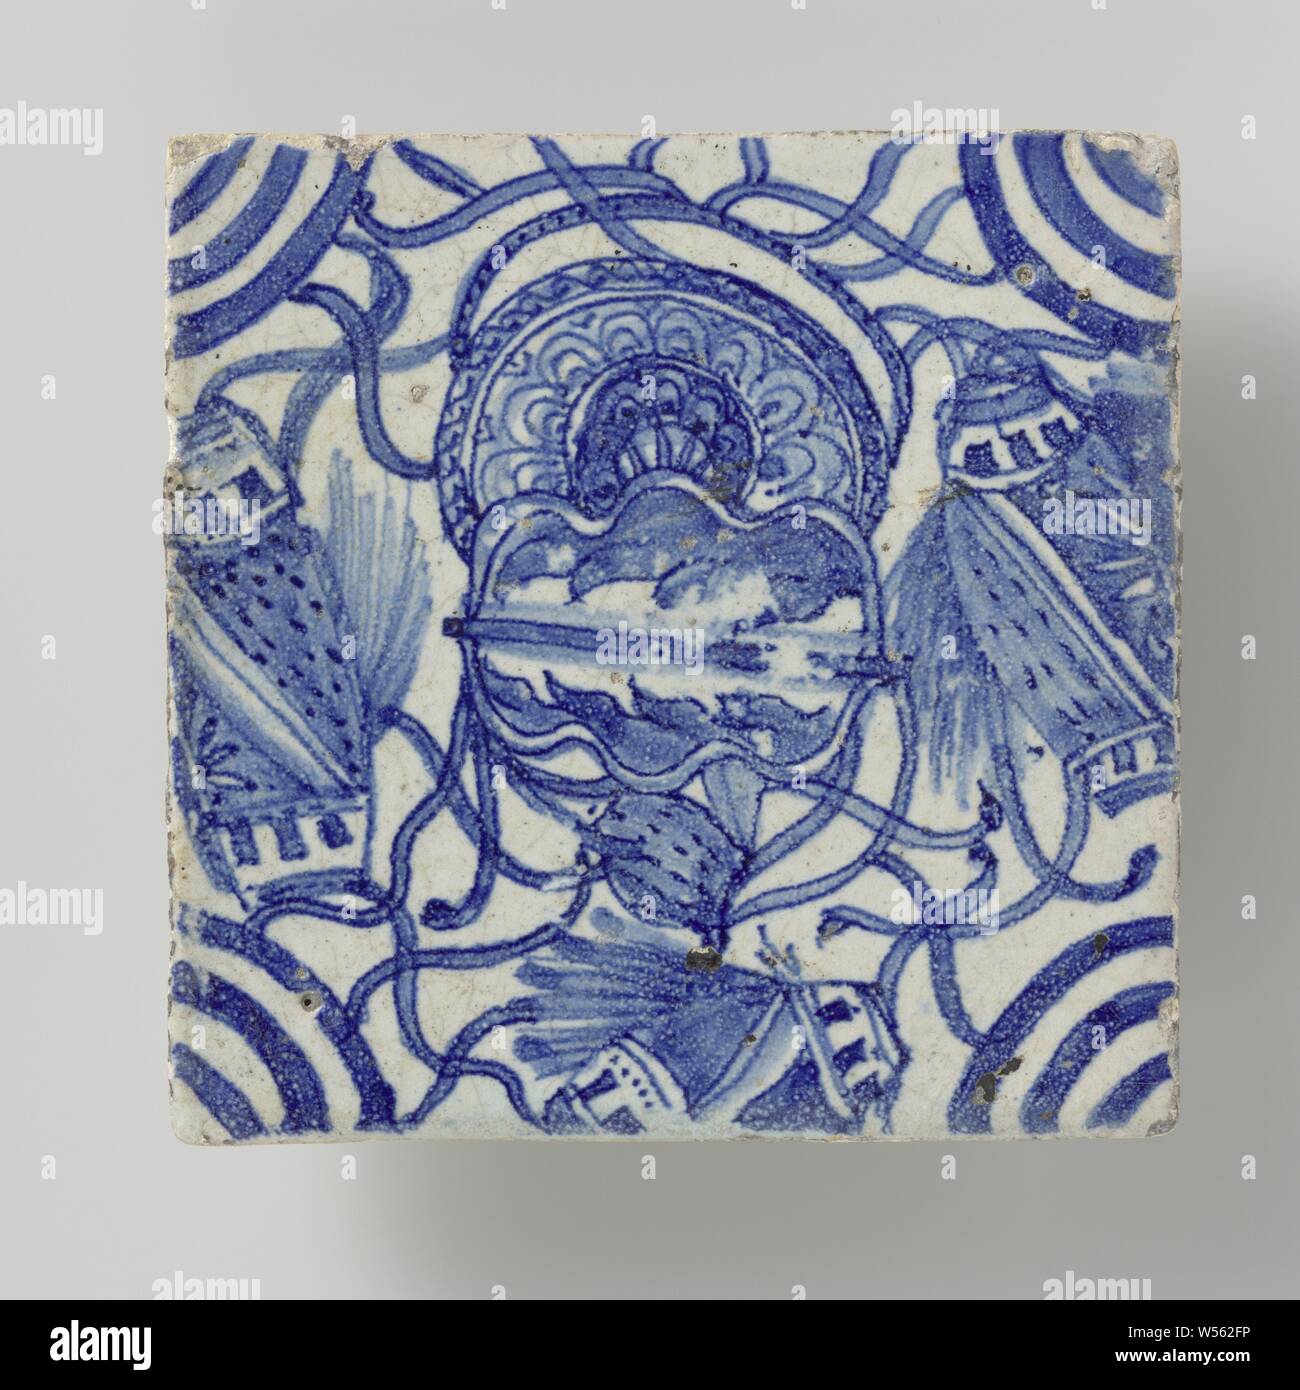 Fliese, Fliese mit chinesischen Motiven in blau. In den Ecken, Mäander Ornament., anonym, Niederlande, 1620 - 1640, Steingut, Zinn Glasur, h 13,5 cm x W 40,5 cm x t 3 cm Stockfoto